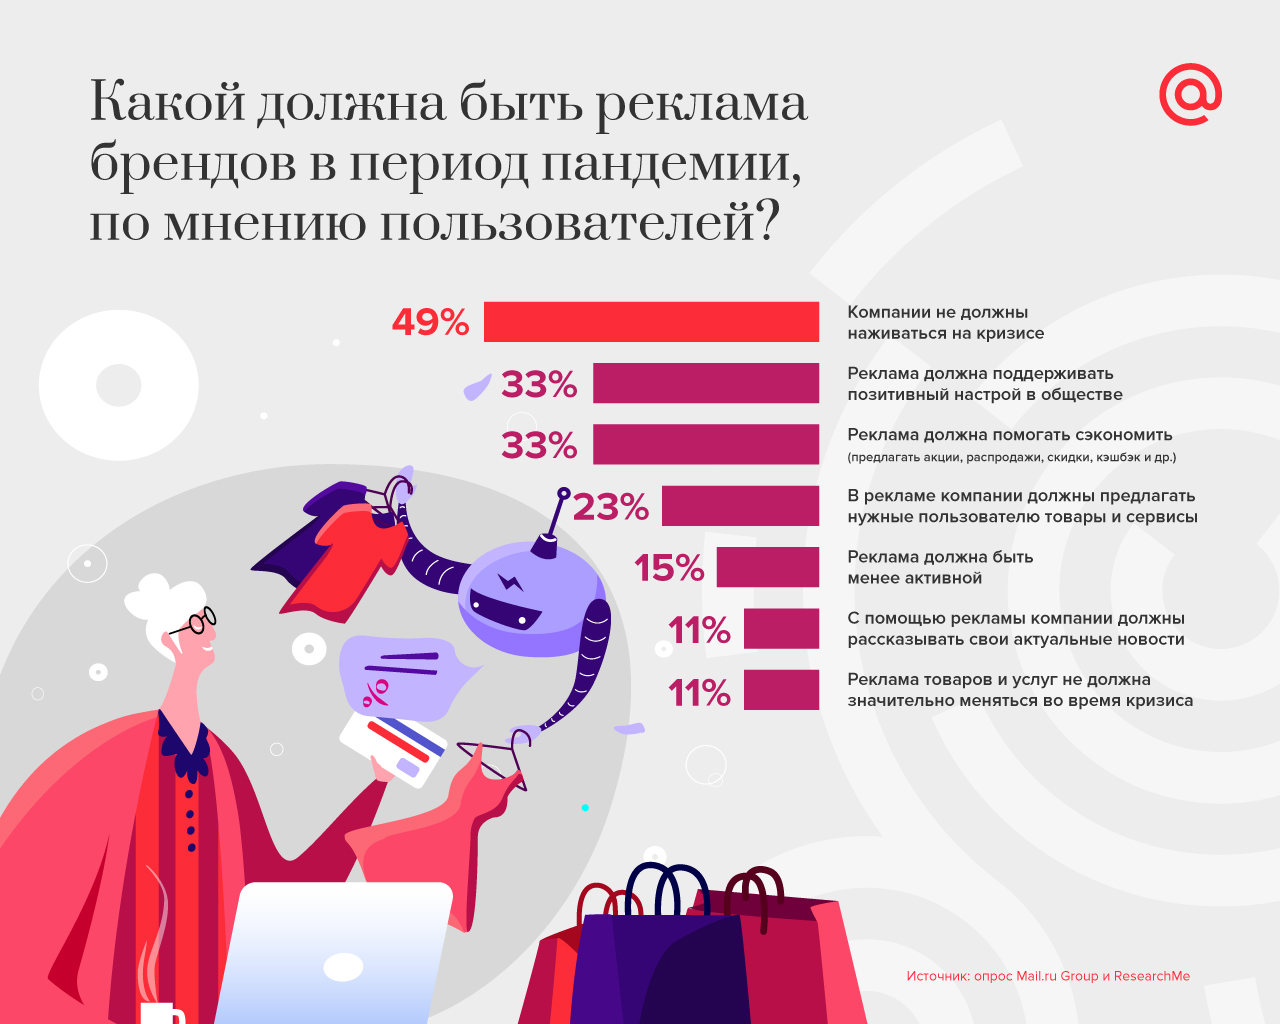 Исследование Mail.ru Group: всего 15% пользователей считают, что реклама должна быть менее активной во время кризиса